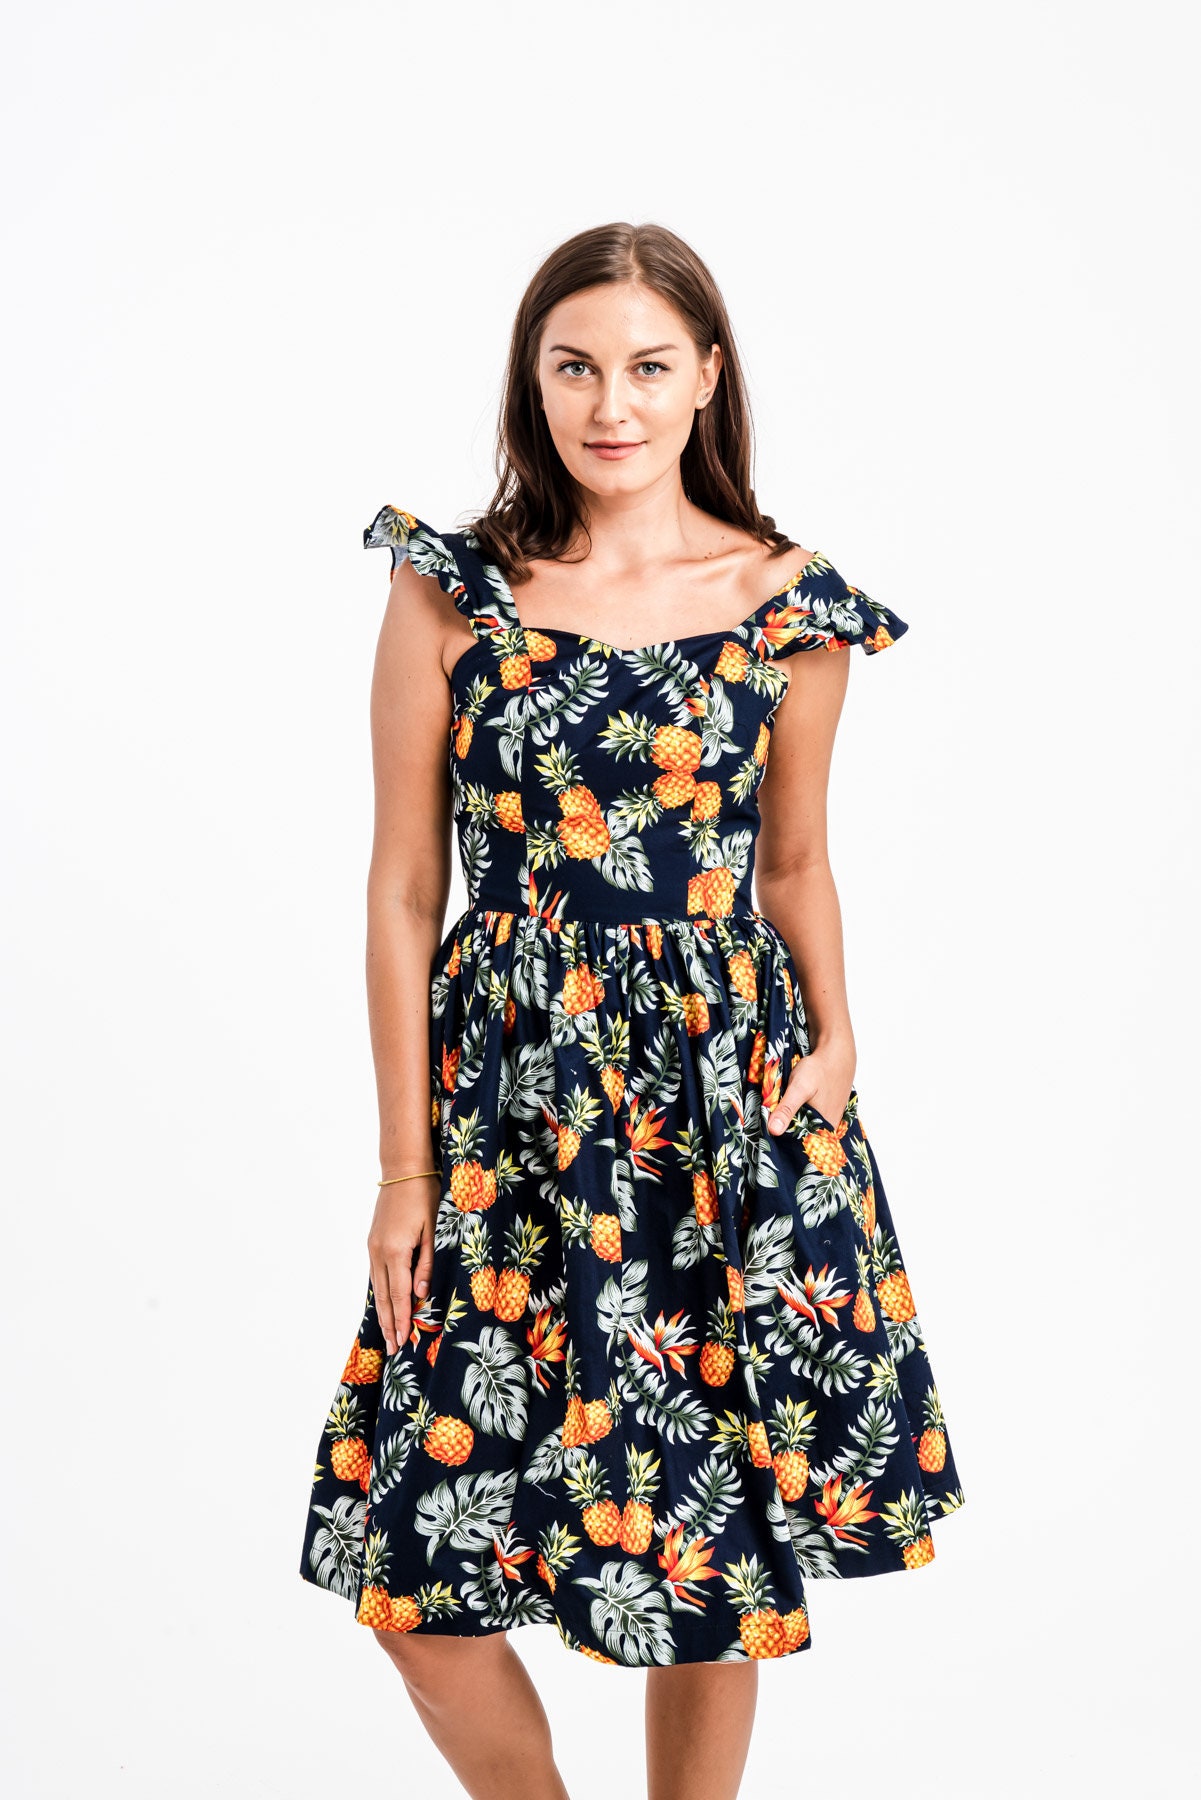 Pineapple Dress Summer Dress Sundress Beach Dress Tropical | Etsy